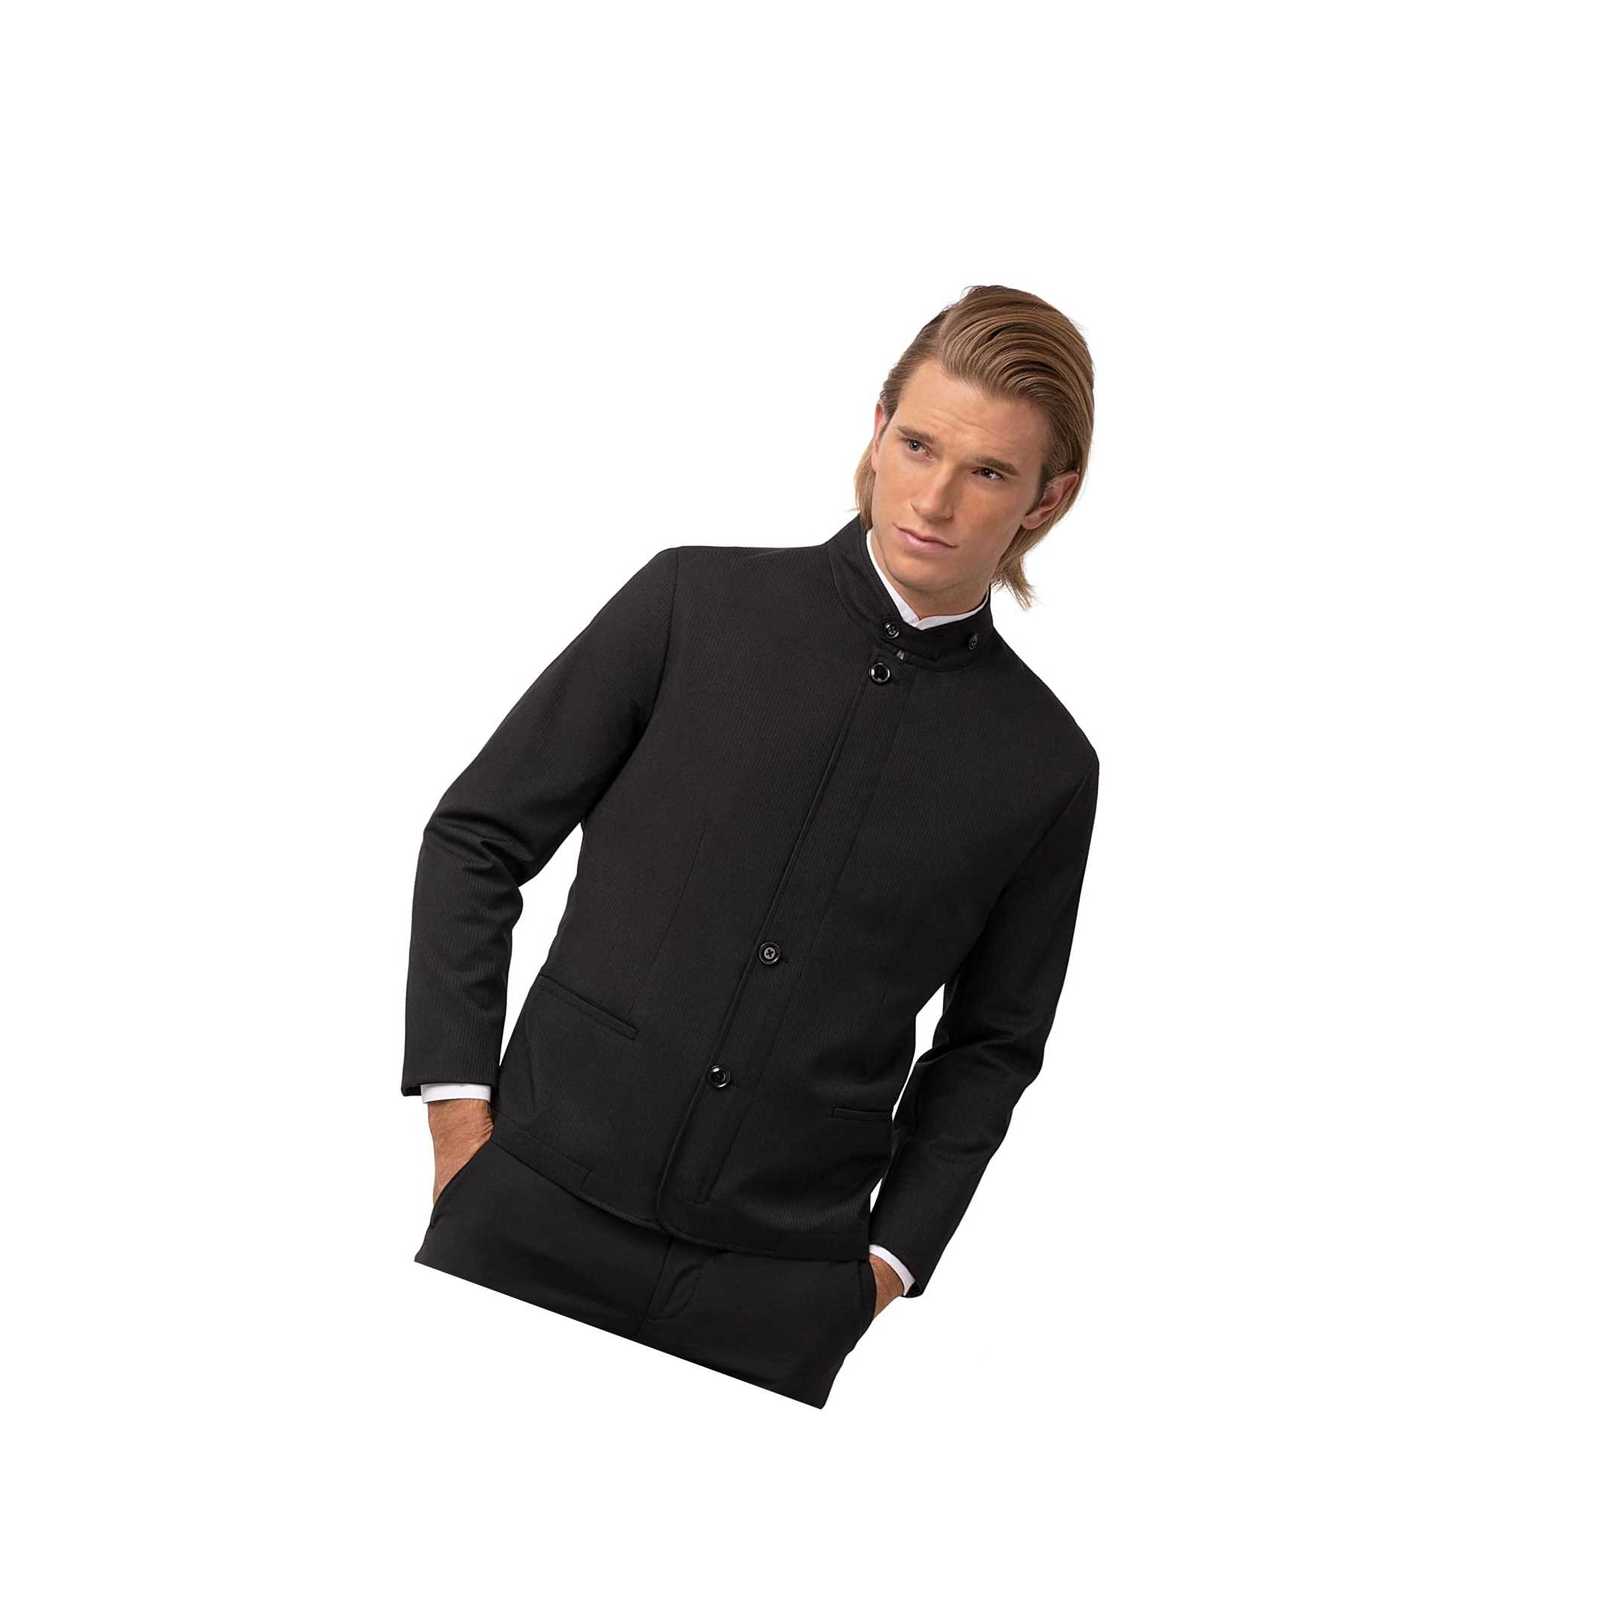 Mgrt Products - Mens banquet coat, black, x-lar